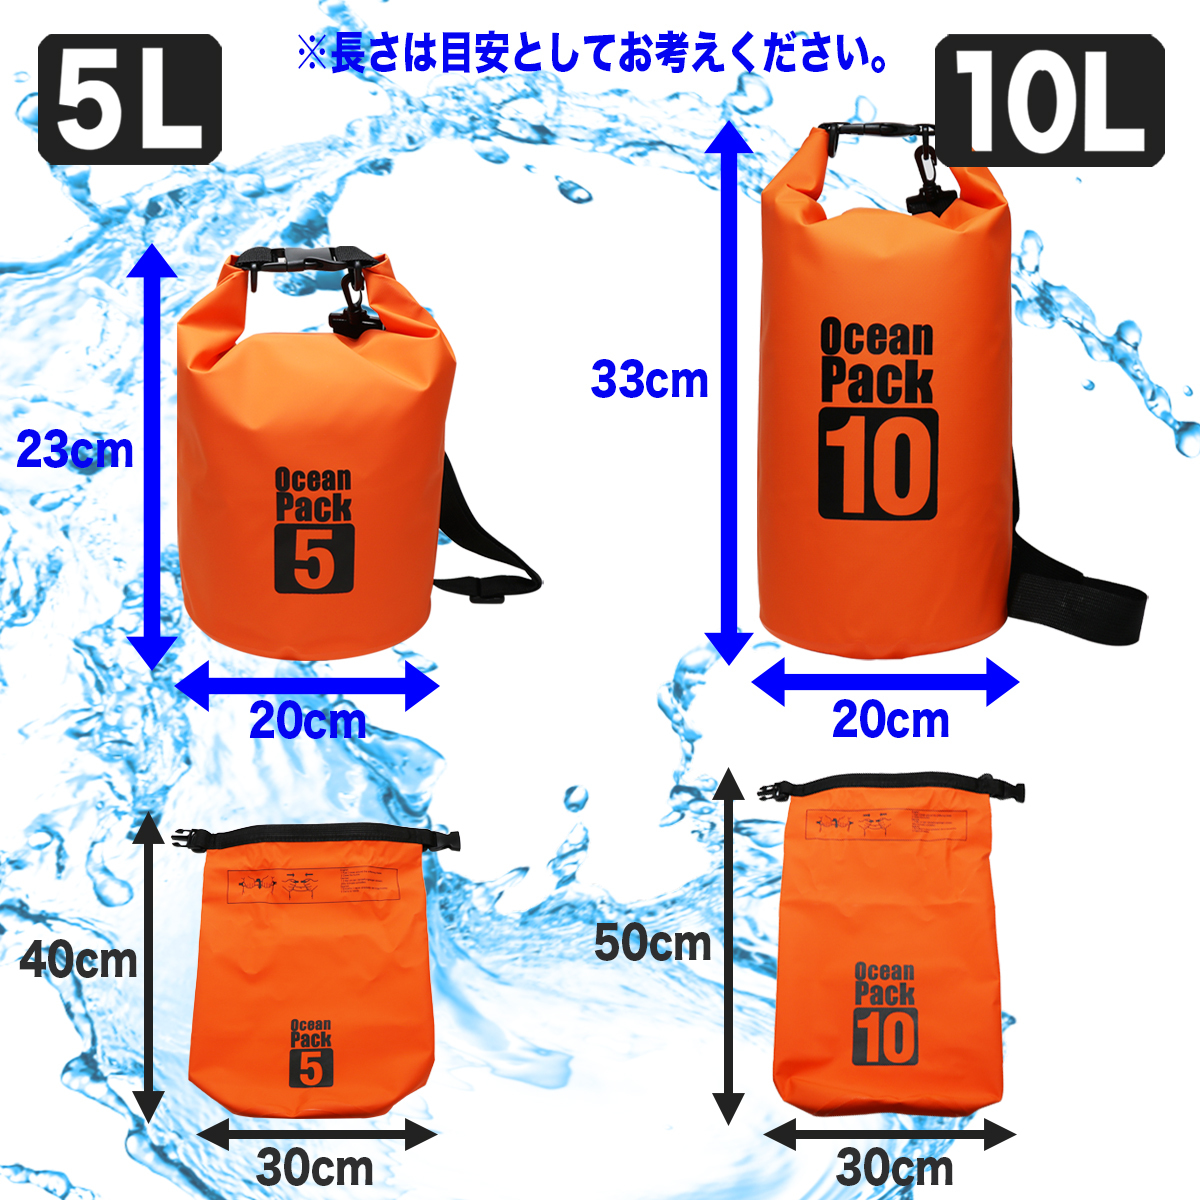 防水バッグ ドライバッグ 5L オレンジ ショルダーバッグ フロートバッグ ビーチバッグ アウトドア キャンプ 川 海 釣り マリンスポーツ